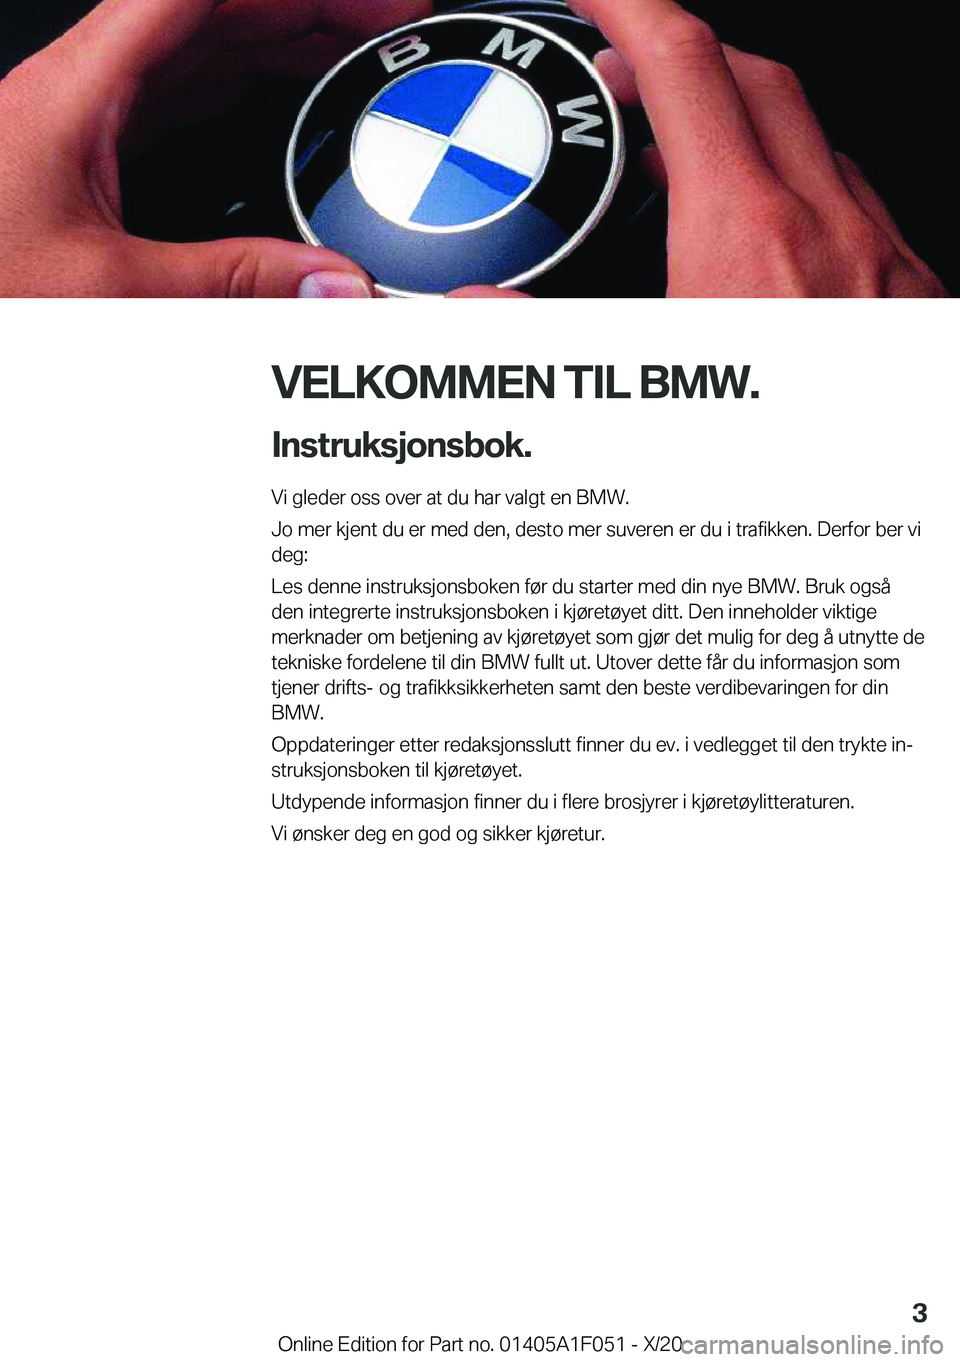 BMW X1 2021  InstruksjonsbØker (in Norwegian) �V�E�L�K�O�M�M�E�N��T�I�L��B�M�W�.�I�n�s�t�r�u�k�s�j�o�n�s�b�o�k�.
�V�i��g�l�e�d�e�r��o�s�s��o�v�e�r��a�t��d�u��h�a�r��v�a�l�g�t��e�n��B�M�W�.
�J�o��m�e�r��k�j�e�n�t��d�u��e�r��m�e�d�